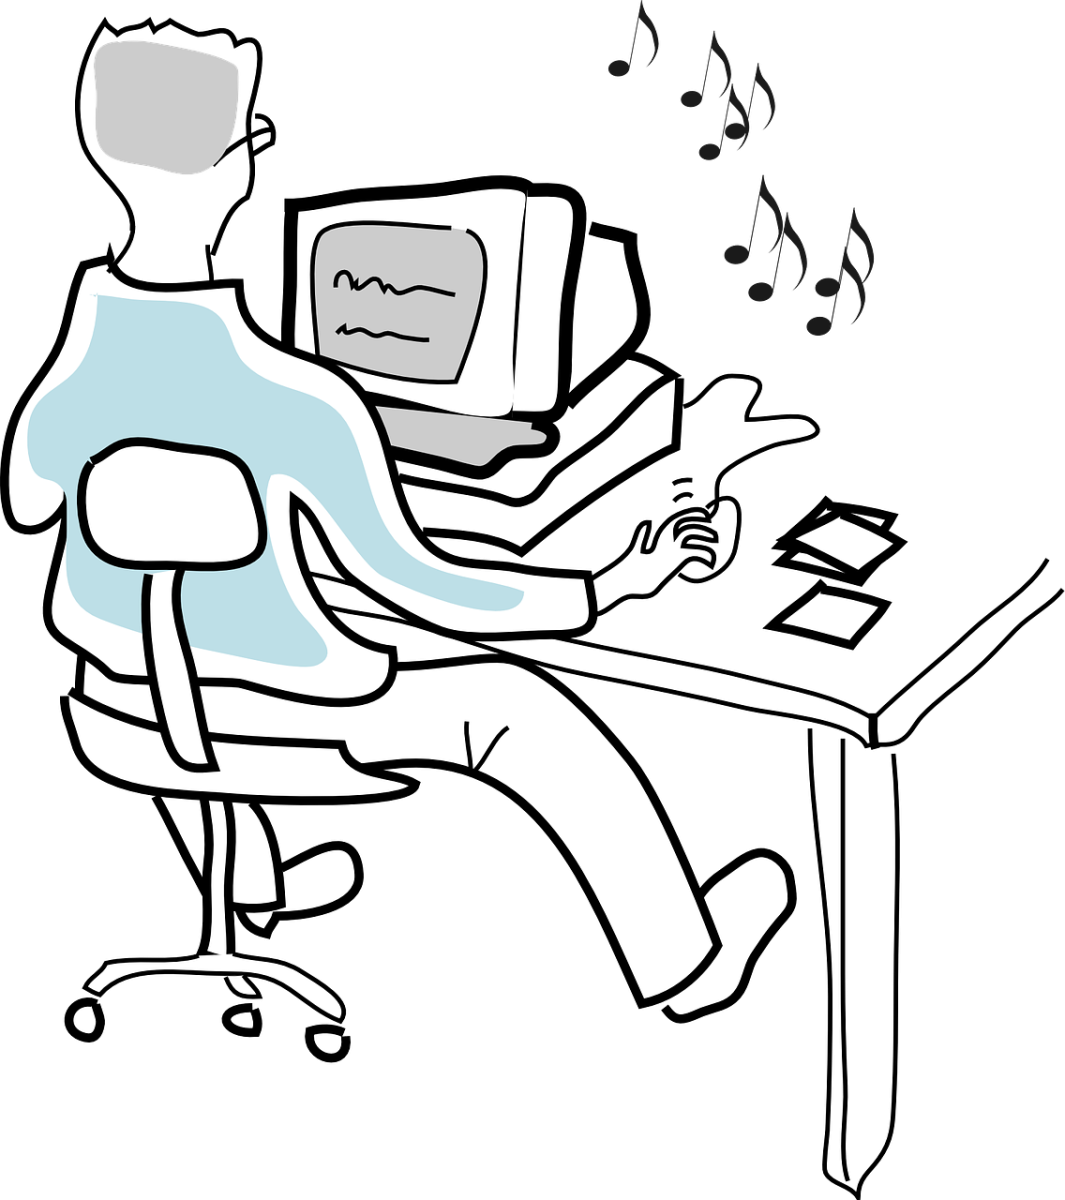 Computer user. Человек сидит за компьютером. Человек за компьютером рисунок. Чел сидит за компом. Нарисованный человек за компьютером.